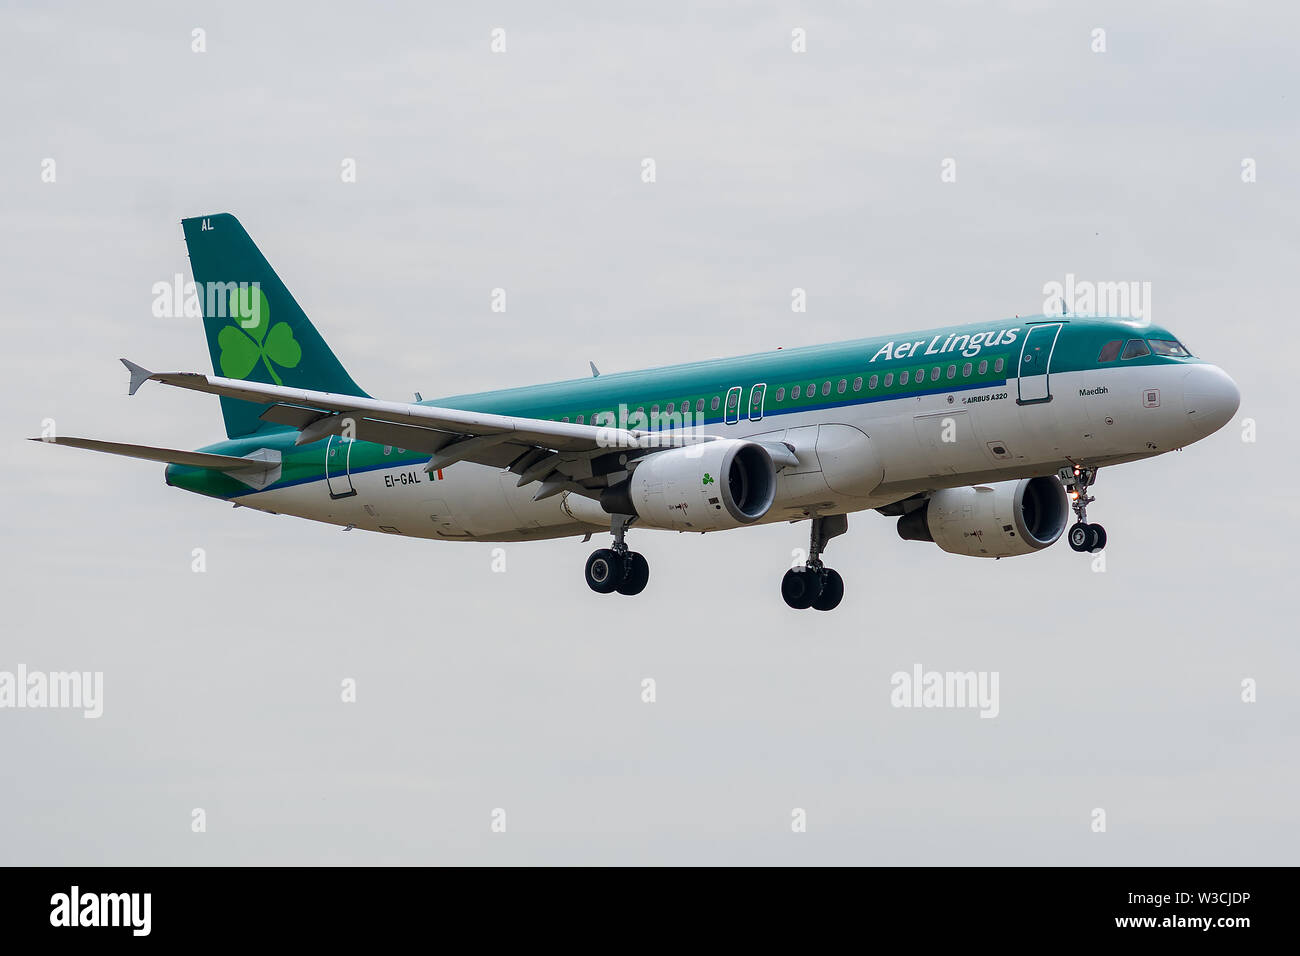 EI-GAL, le 11 juillet 2019, l'Airbus A320-214-3789 atterrissage sur les pistes d'aéroport Paris Roissy Charles de Gaulle à la fin de l'Aer Lingus EI524 flight Banque D'Images